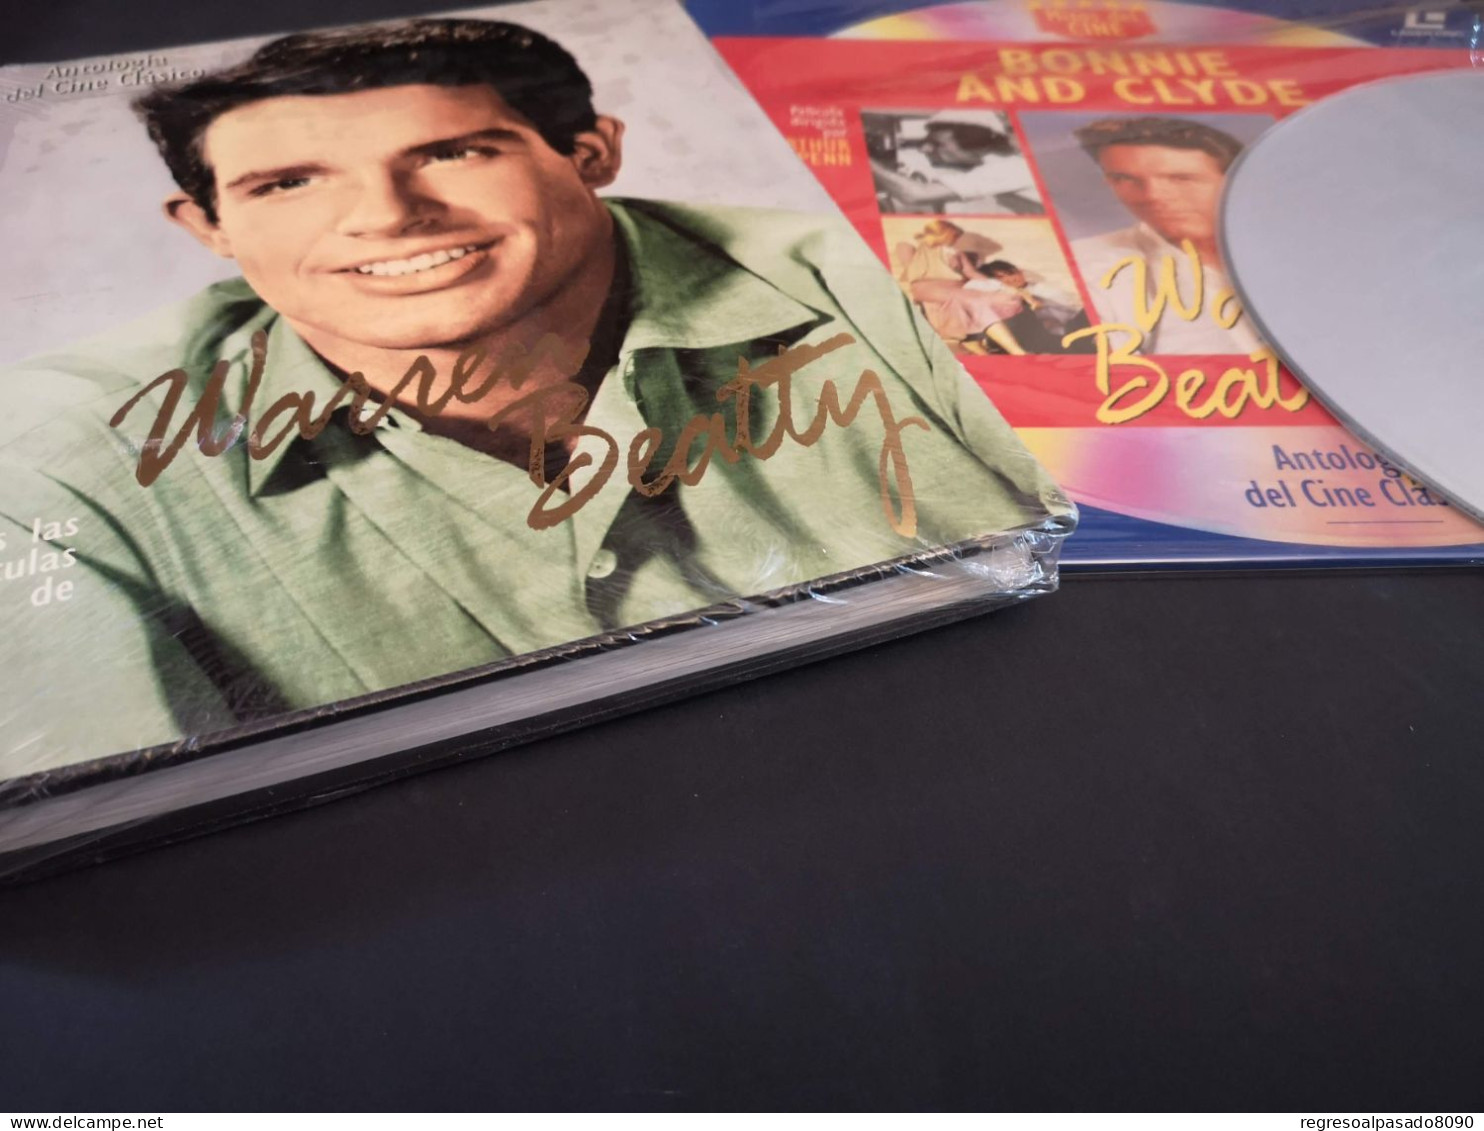 Warren Beatty Libro Y Película Laser Disc Laserdisc Bonnie And Clyde. Colección Mitos Del Cine Planeta Años 90 - Klassiekers